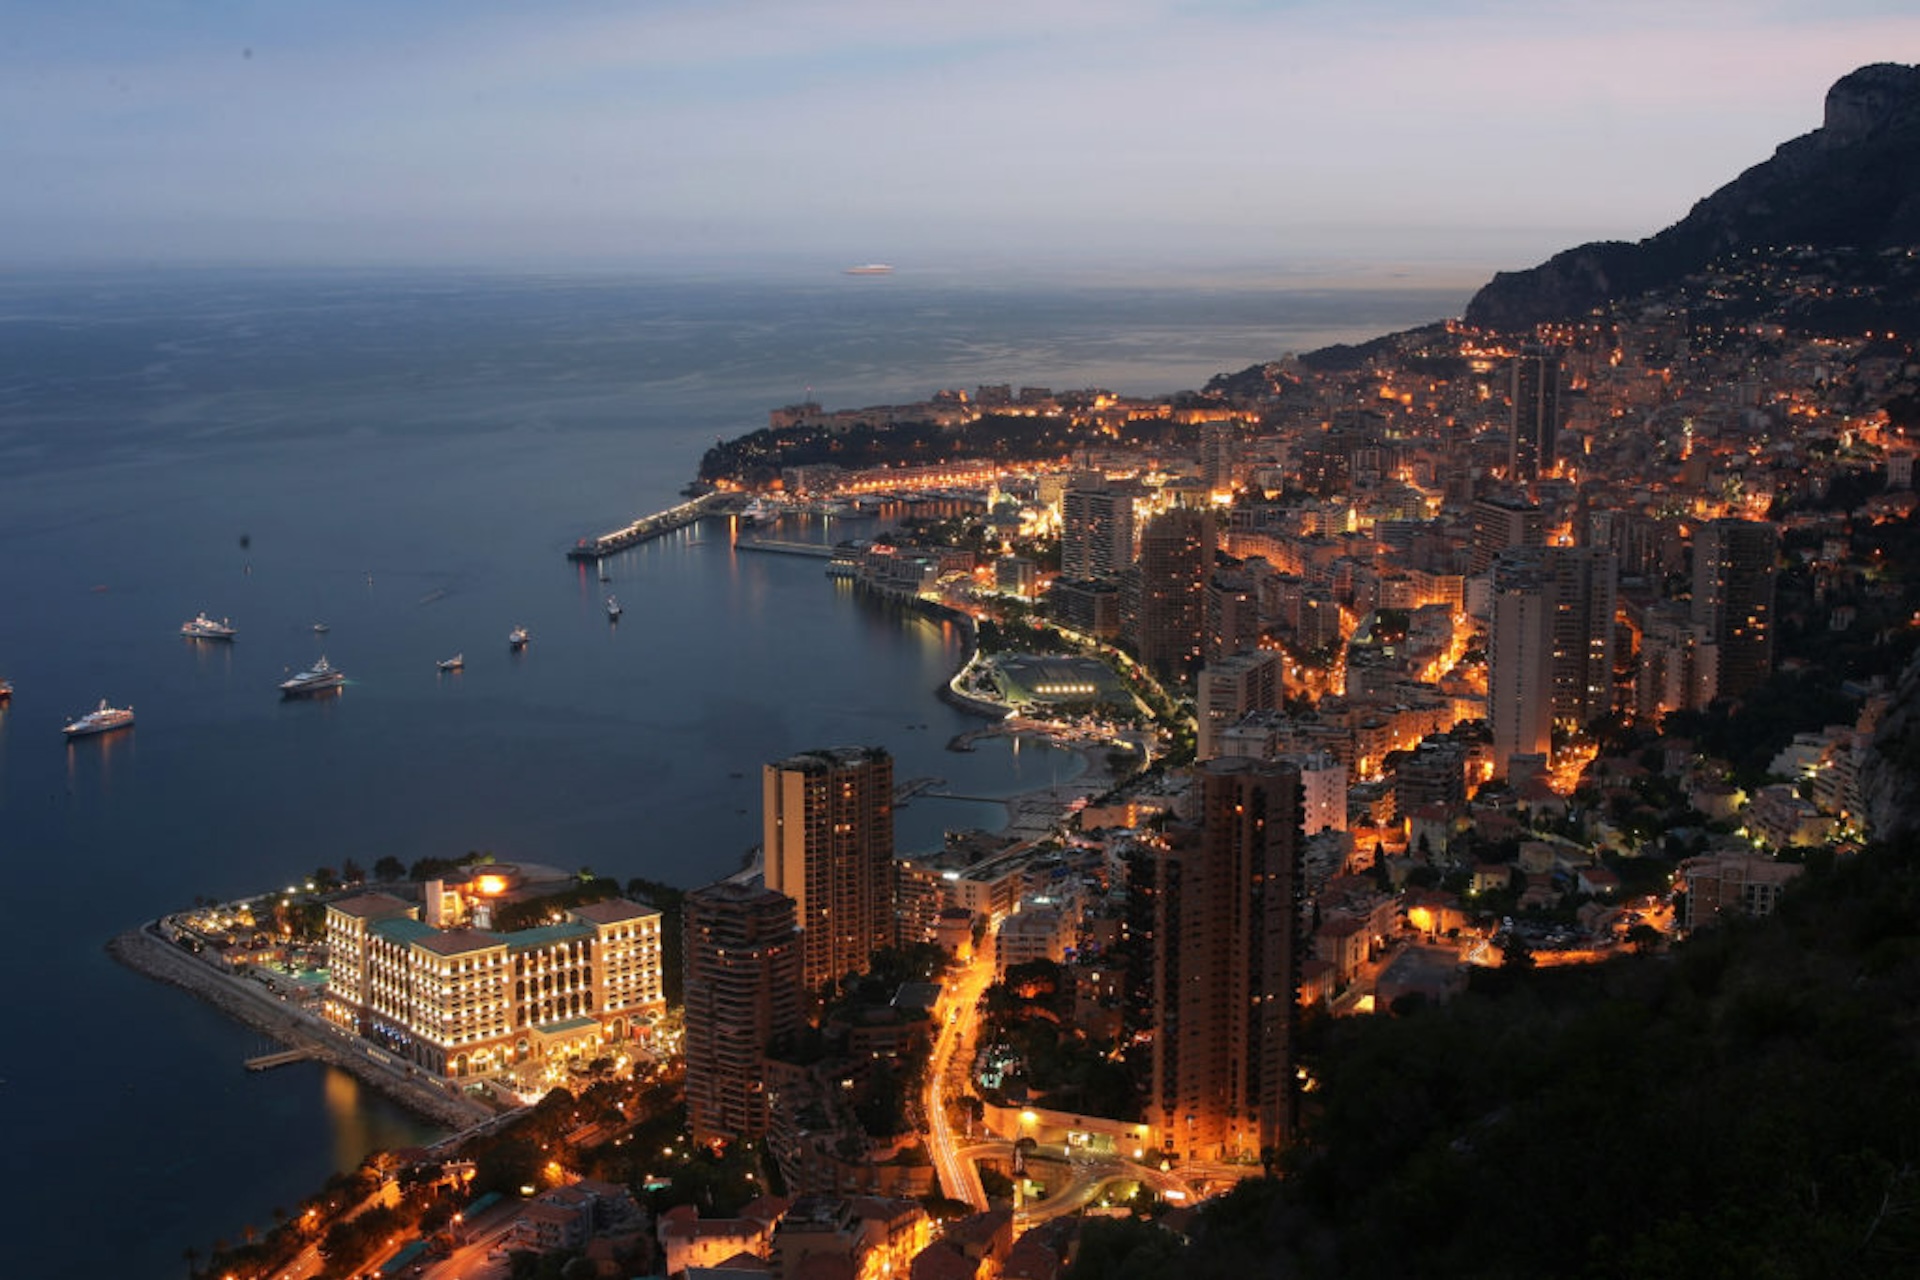 Monako ohranja svoj čar in se odpira digitalnim inovacijam